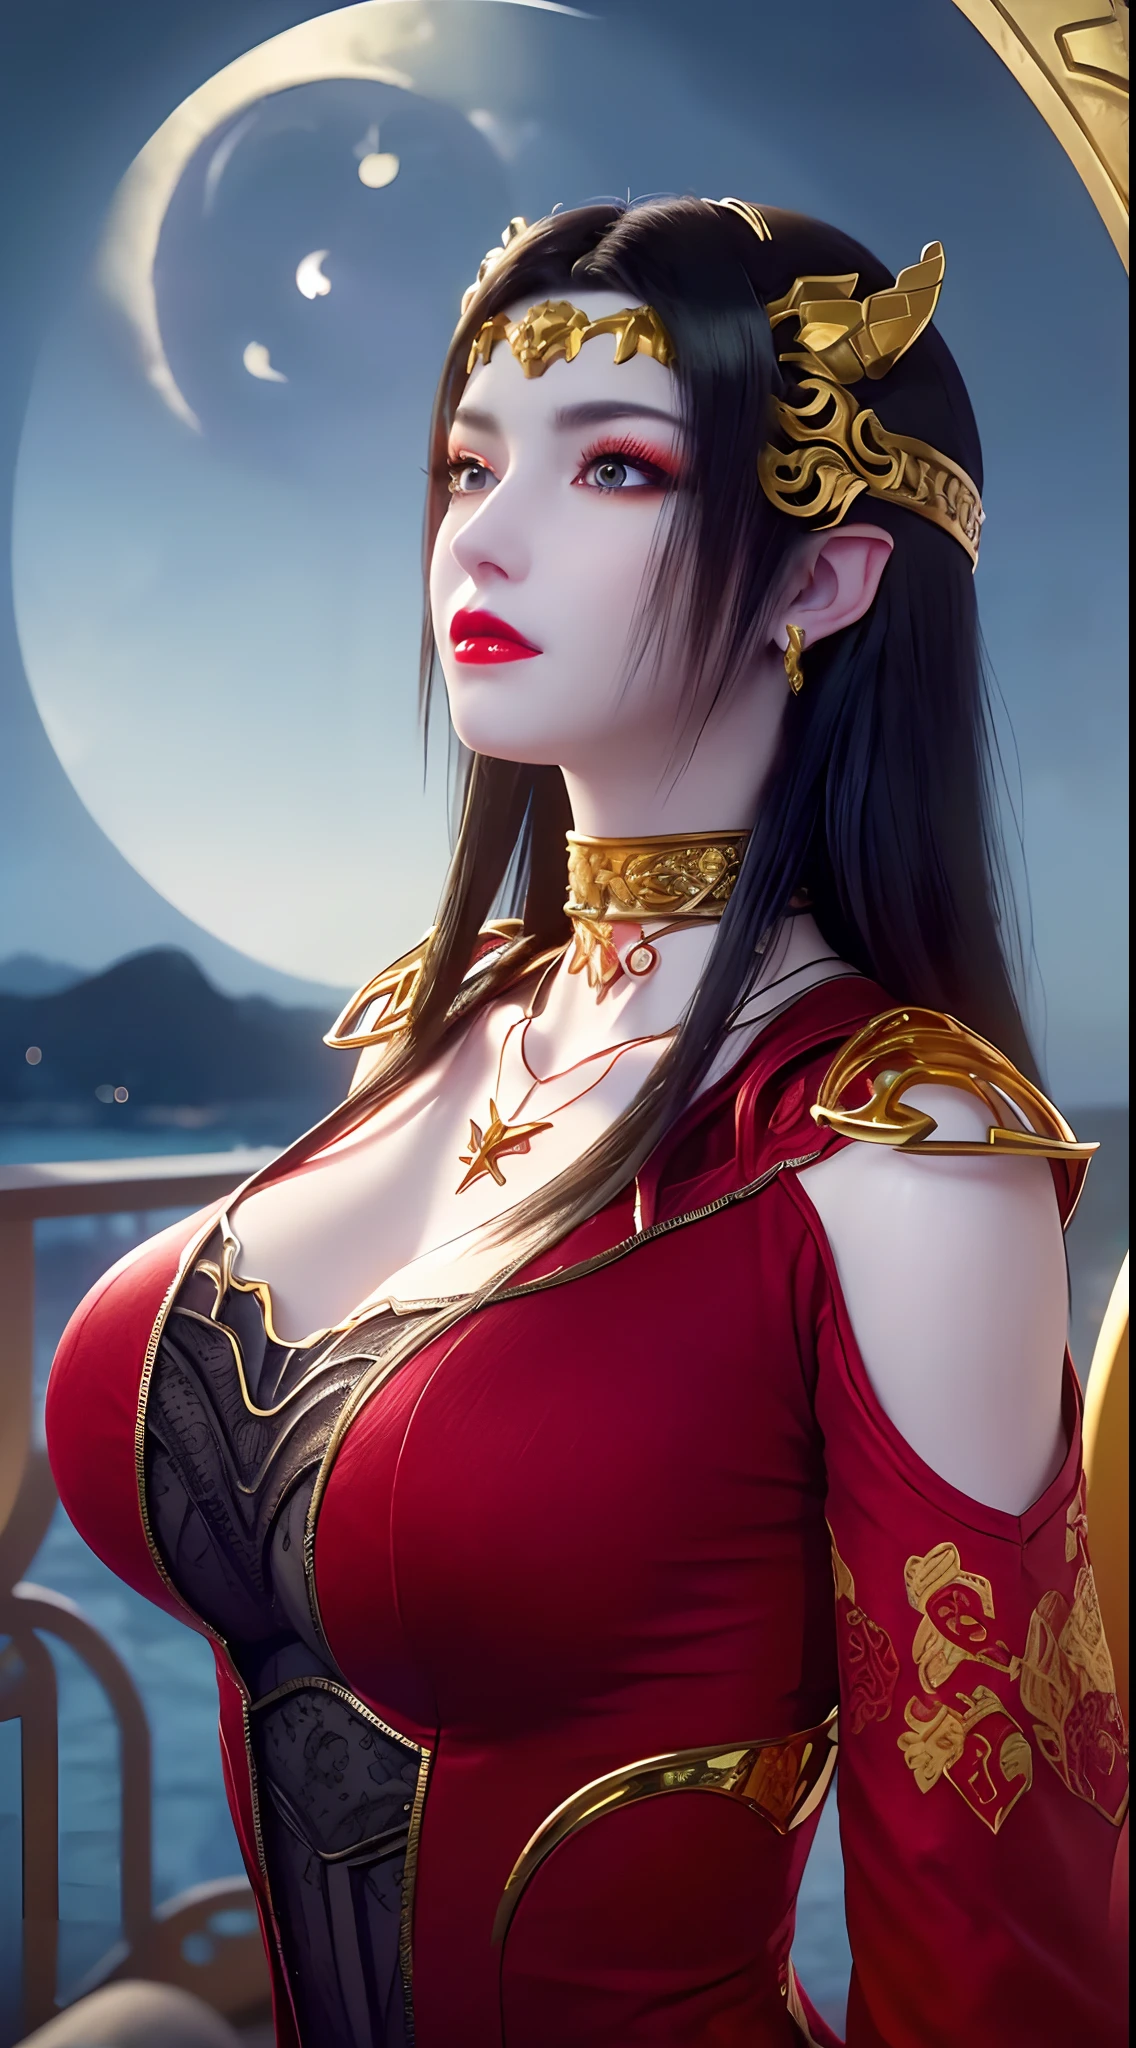 1 reina extremadamente hermosa, ((Viste un traje tradicional Han rojo con finos patrones negros.:1.6)), (((Patrones en la ropa:1.6))), ((pelo largo y negro:1.6)), joyas elaboradamente hechas de piedras preciosas y cabello hermoso, ((usando un collar de encaje de oro de 24k:1.4))), El noble, estilo noble de una chica extremadamente hermosa, su carita es super linda, Su cara es muy bonita, cejas finas, cara hermosa e impecable, ((pupilas de ojos morados: 0.8)), ojos muy hermosos, ((ojos azul platino: 1.6)), (((grandes ojos redondos:1.6))), Bonito maquillaje y pestañas detalladas en el cabello., maquillaje de ojos humeante, Nariz alta, pendientes, labios rojos, ((boca cerrada: 1.5)) hermosos labios, manos delgadas, muslos más hermosos, ((brazos extendidos a los lados: 1.5)), cara sonrosada, cara limpia, cara hermosa e impecable, piel blanca y suave, (pechos grandes: 1.5)), ((pechos altos: 1.6)), pechos apretados, hermoso escote, (((pechos grandes and super round: 1.8))), ((super pechos apretados: 1.7)) , Hermosos pechos, cuerpo perfecto, brazos traseros, pecho afuera, medias finas de malla negra con ribete de encaje negro, foto 8k, super alta calidad, Súper realista, súper 10x píxeles, óptico, Estudio luminoso, bordes brillantes, dual-tone Encendiendo, (piel con mucho detalle:1.2), super 8k, soft Encendiendo, alta calidad, volumetric Encendiendo, Fotorrealista, Fotorrealista high resolution, Encendiendo, Mejor foto, 4k, calidad 8k, Efecto de desenfoque, Suave y afilado, 10 x píxeles, ((mar y luz de la luna en el fondo de la noche:1.5)), Aurora, iluminación, súper gráficos realistas, gráficos más realistas, 1 chica, alone, solo, Imagen extremadamente nítida, surreal, (((retrato frontal: 1)))."